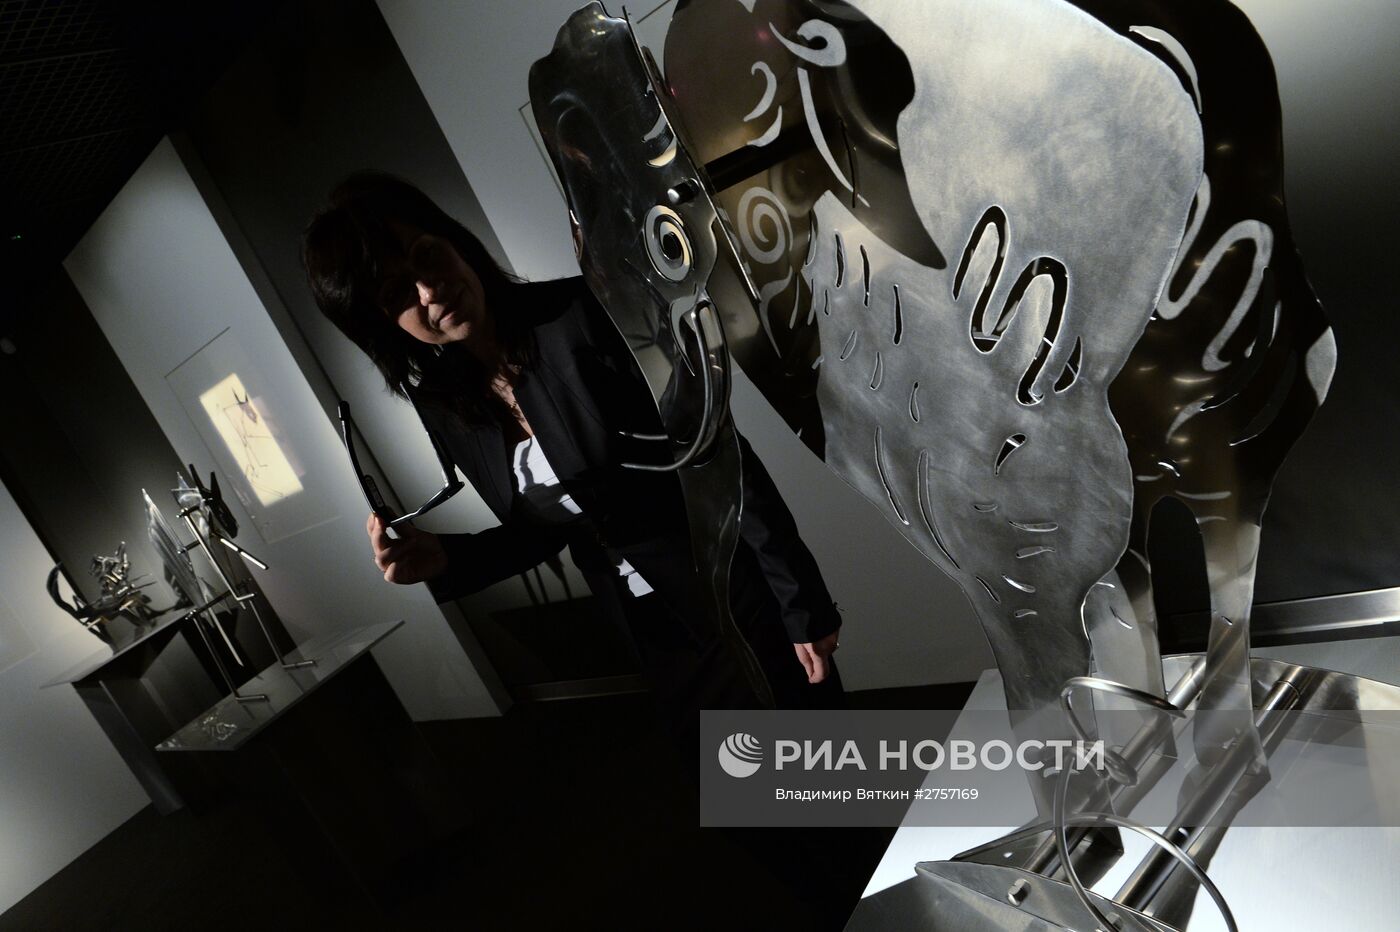 Выставка анималистики Анатолия Зверева - "Волшебная клетка. А не пойти ли нам в зоопарк?"